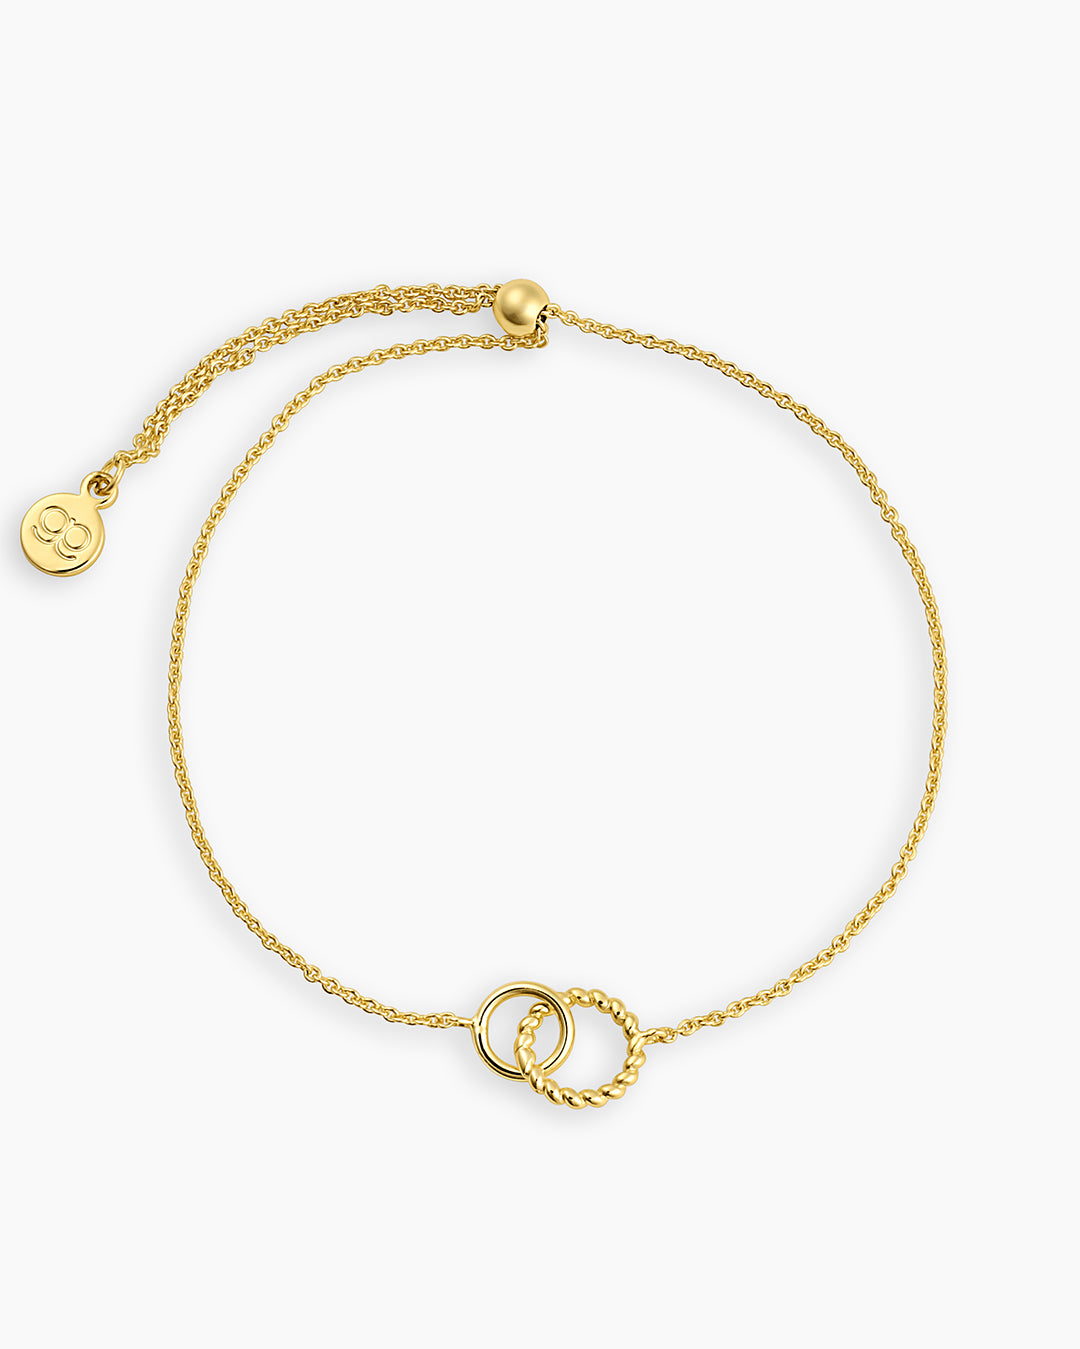 Crew Charm Bracelet link bracelet circle bracelet adjustable bracelet || option::Gold Plated